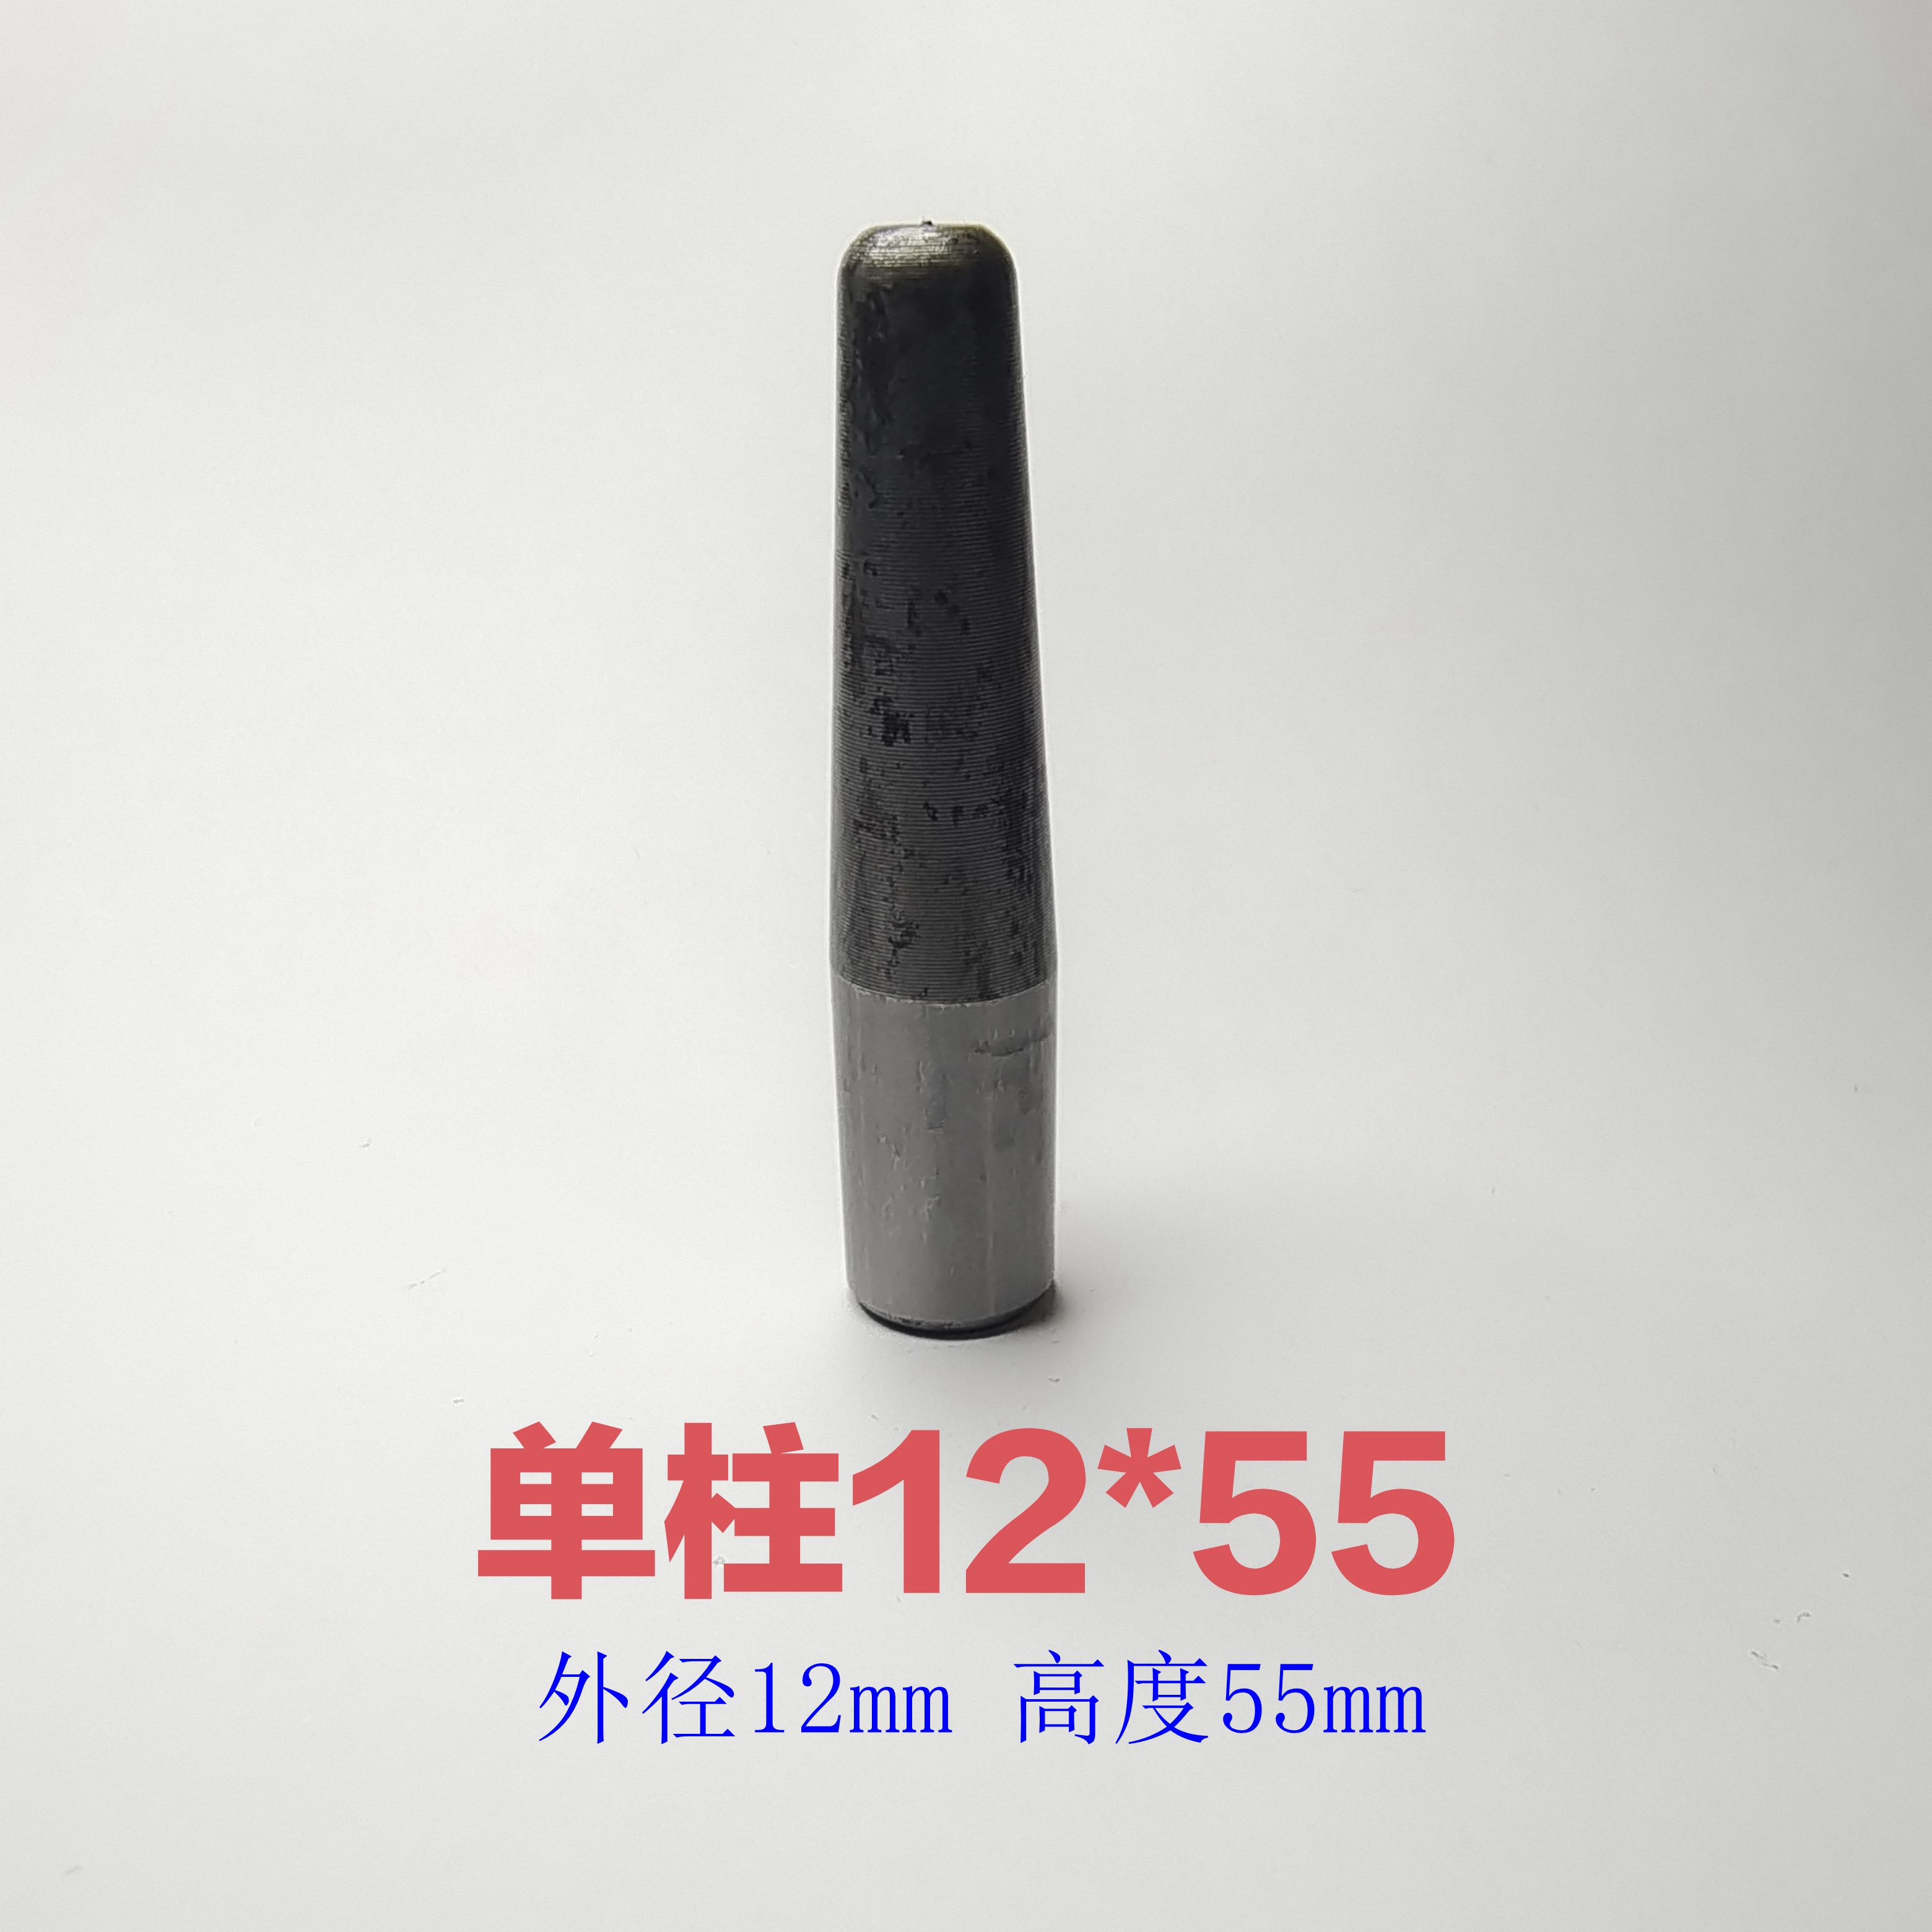 硅胶橡胶模具导柱导套单柱套配合使用定位销套材质20cr硬度58-62